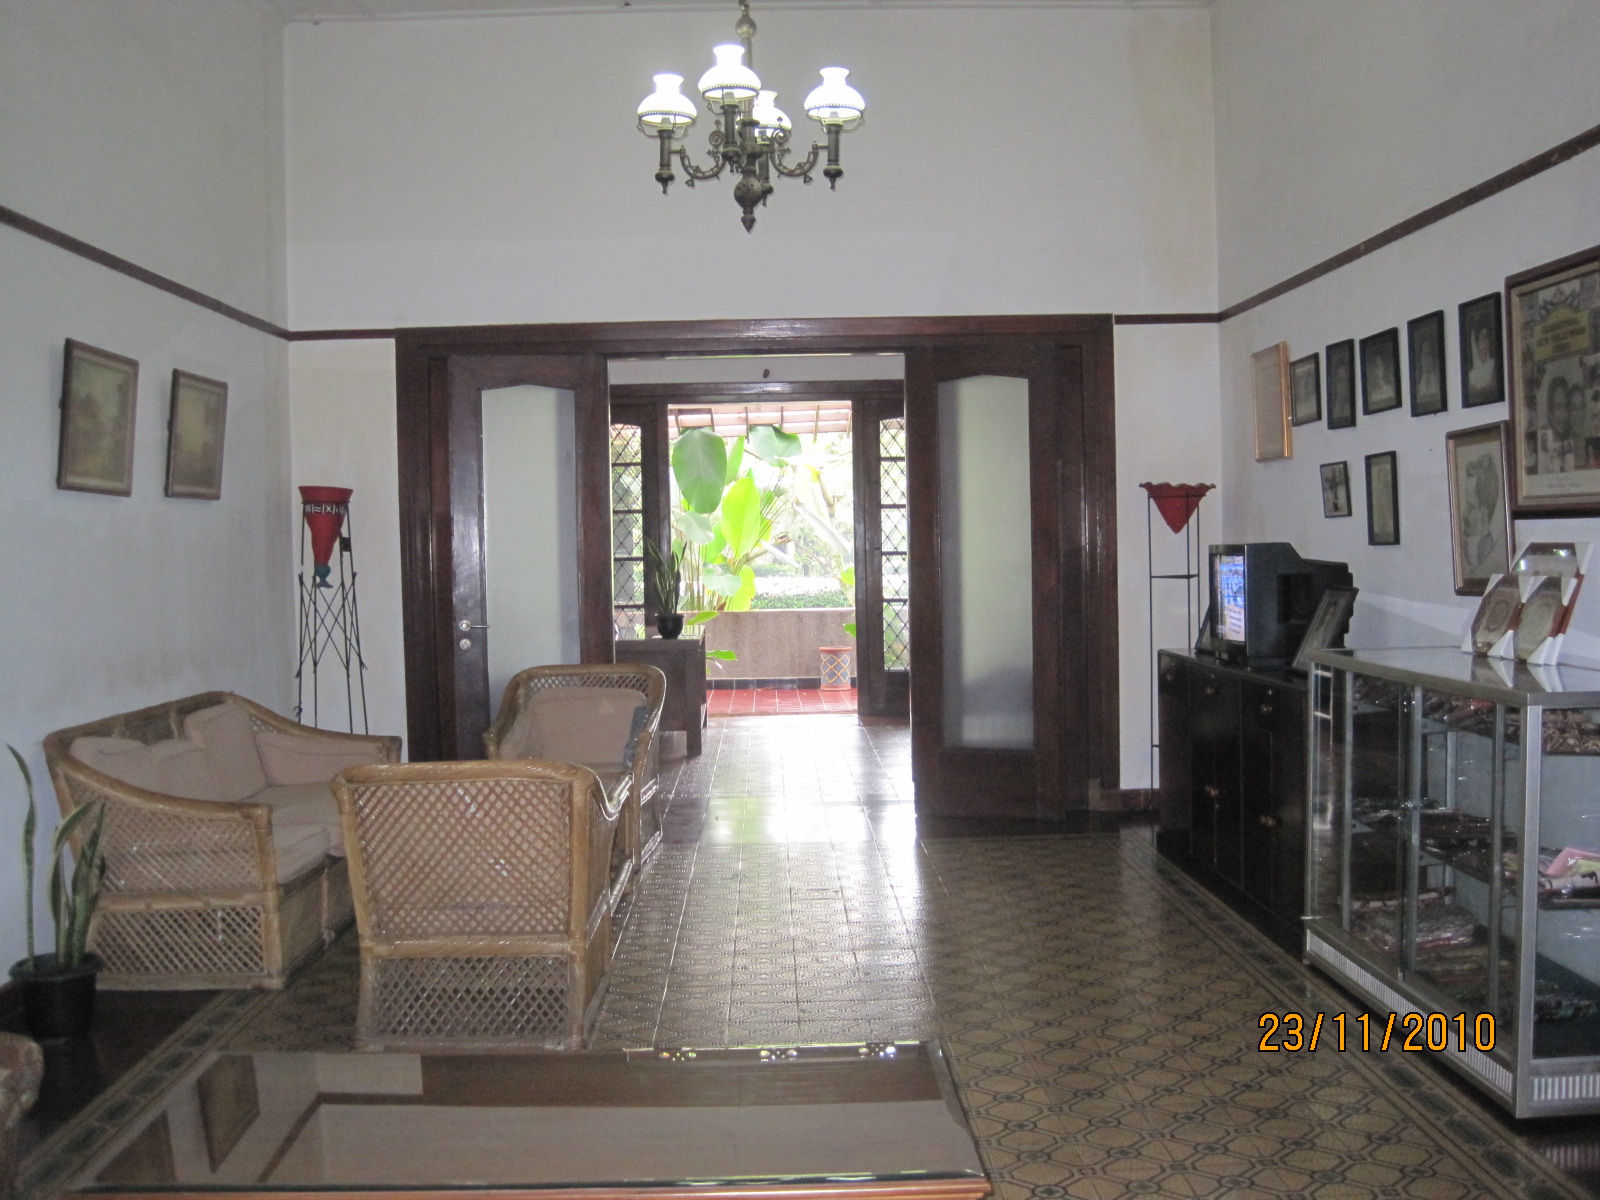 My brief experience staying at Rumah Ebo, Bandung  Butik 